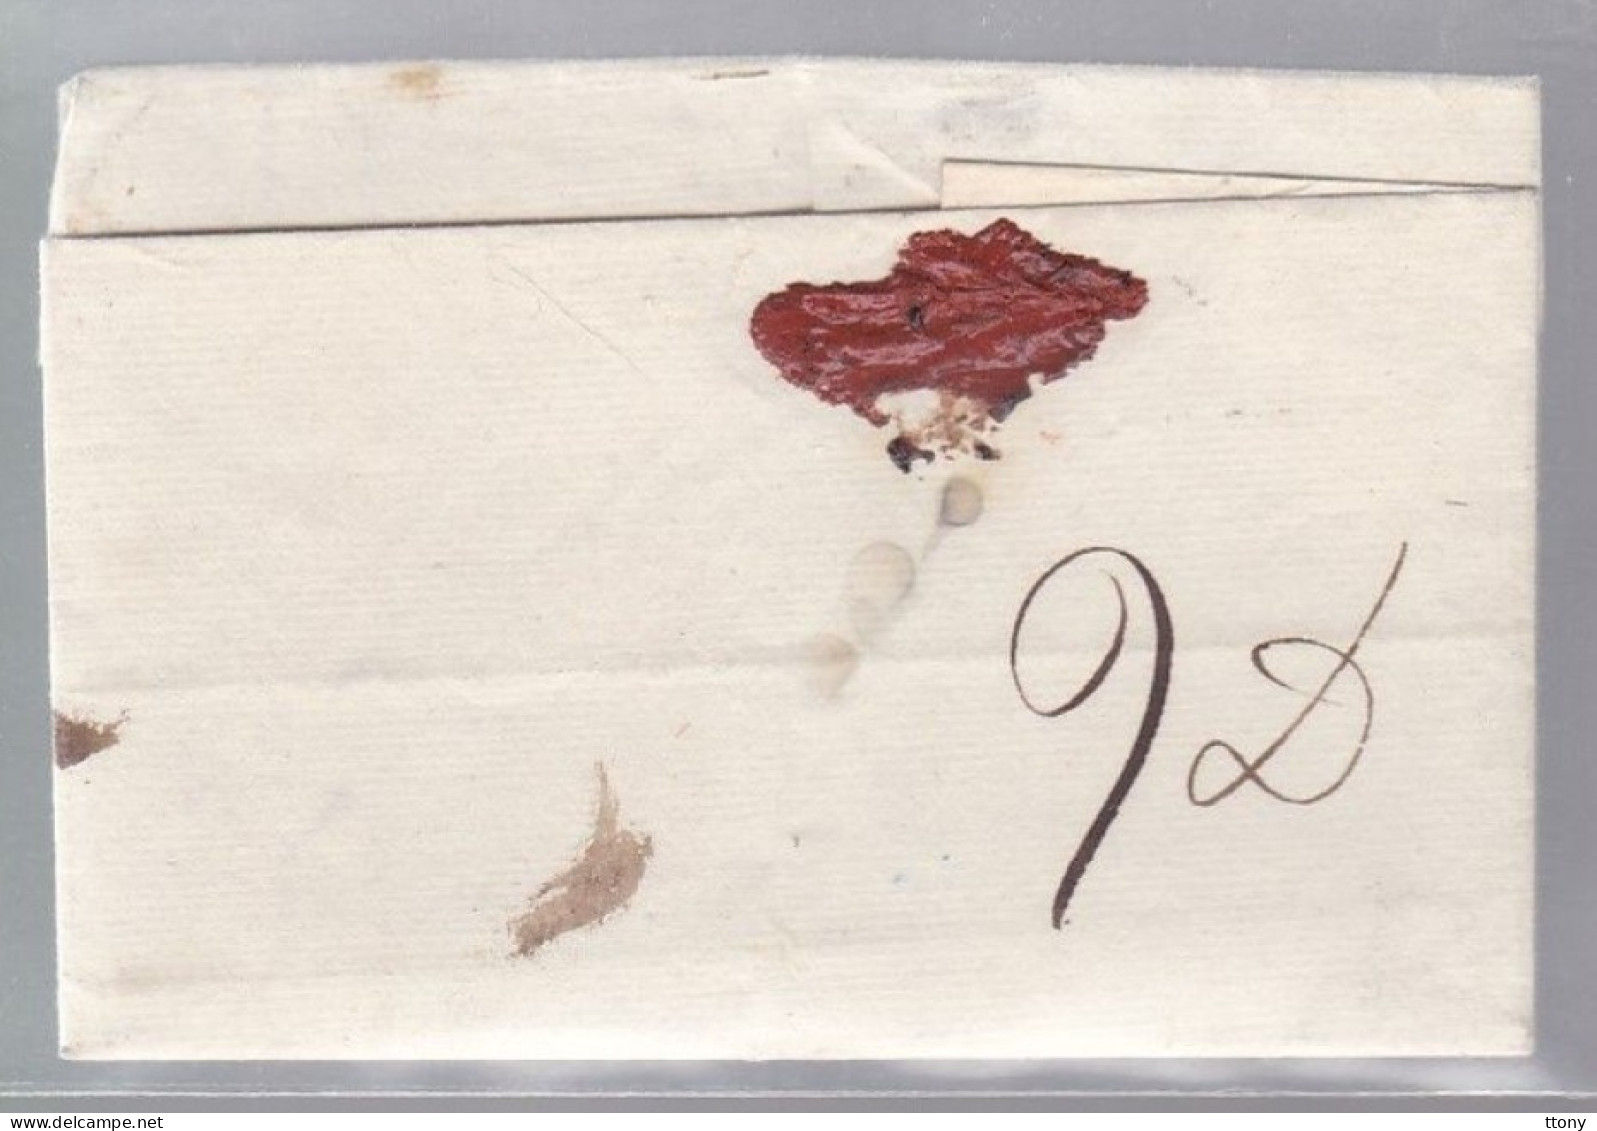 Lettre Dite Précurseurs  Sur Enveloppe  S.C    Année 1817  Destination Caen   P. 13.P Lisieux - 1801-1848: Vorläufer XIX